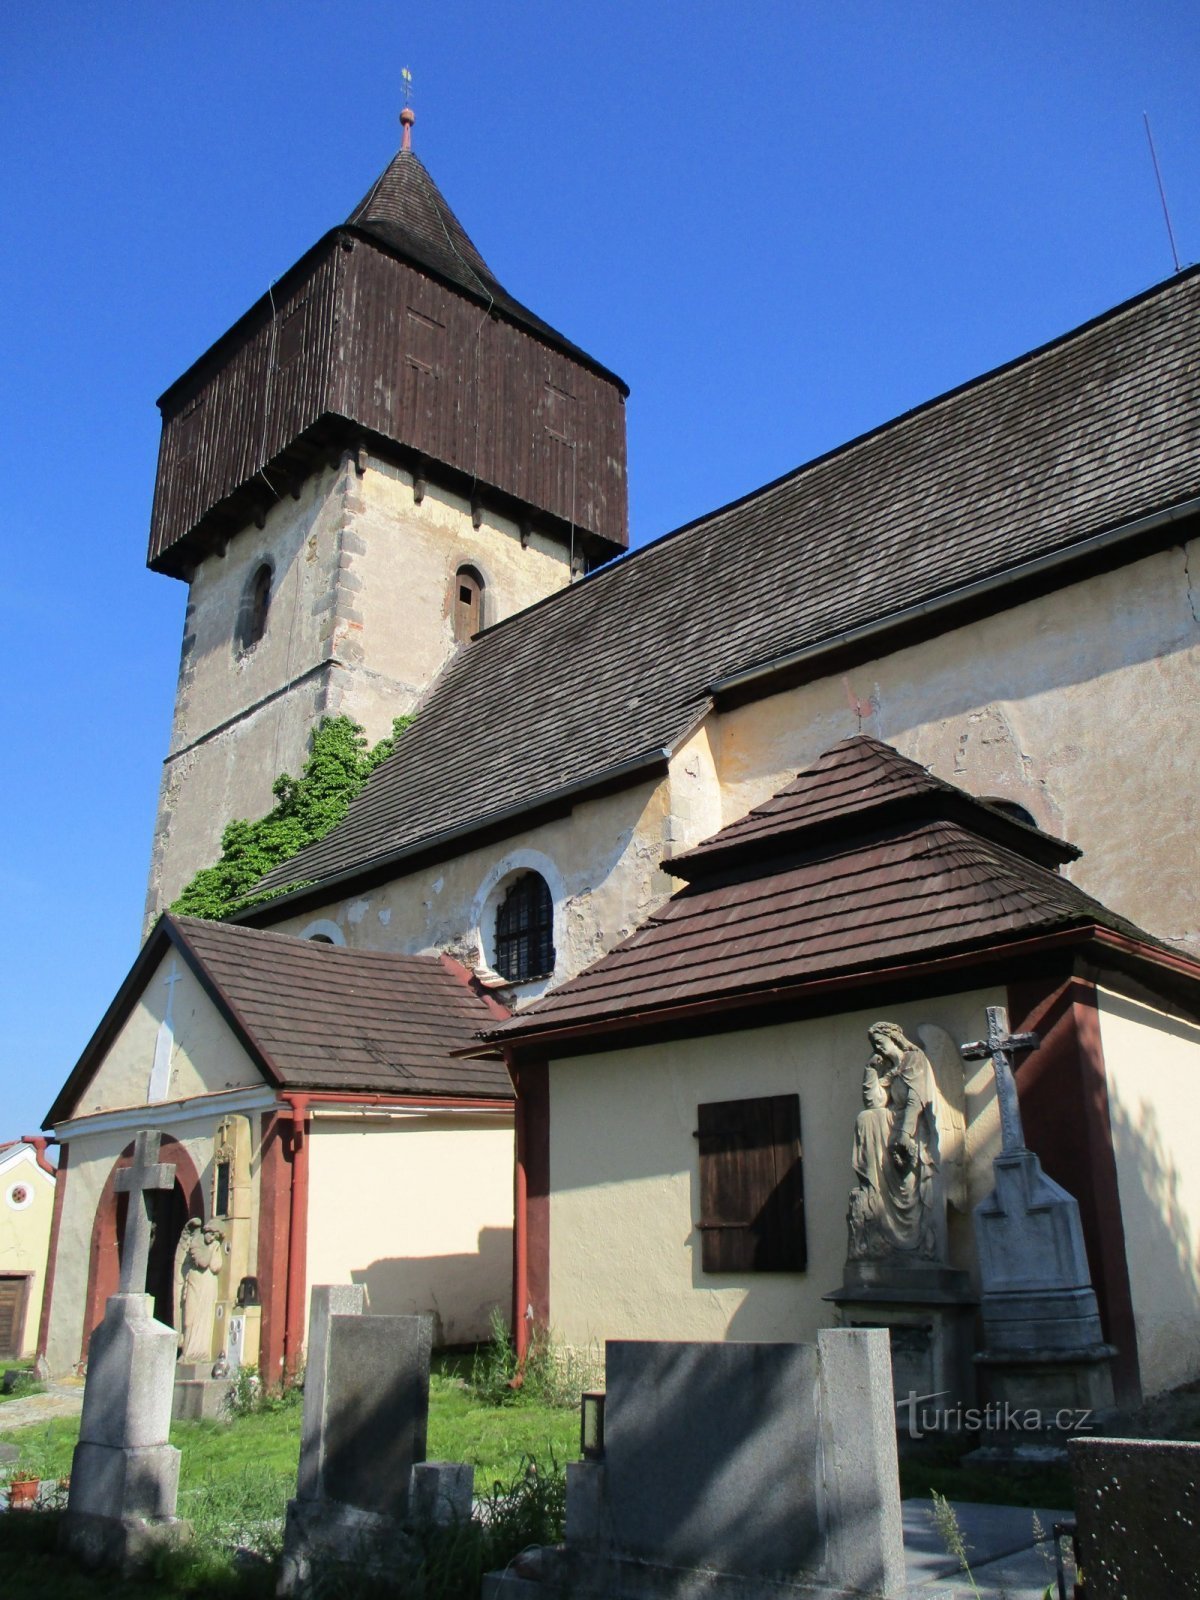 Church of St. Sigismund the Martyr (Králova Lhota)